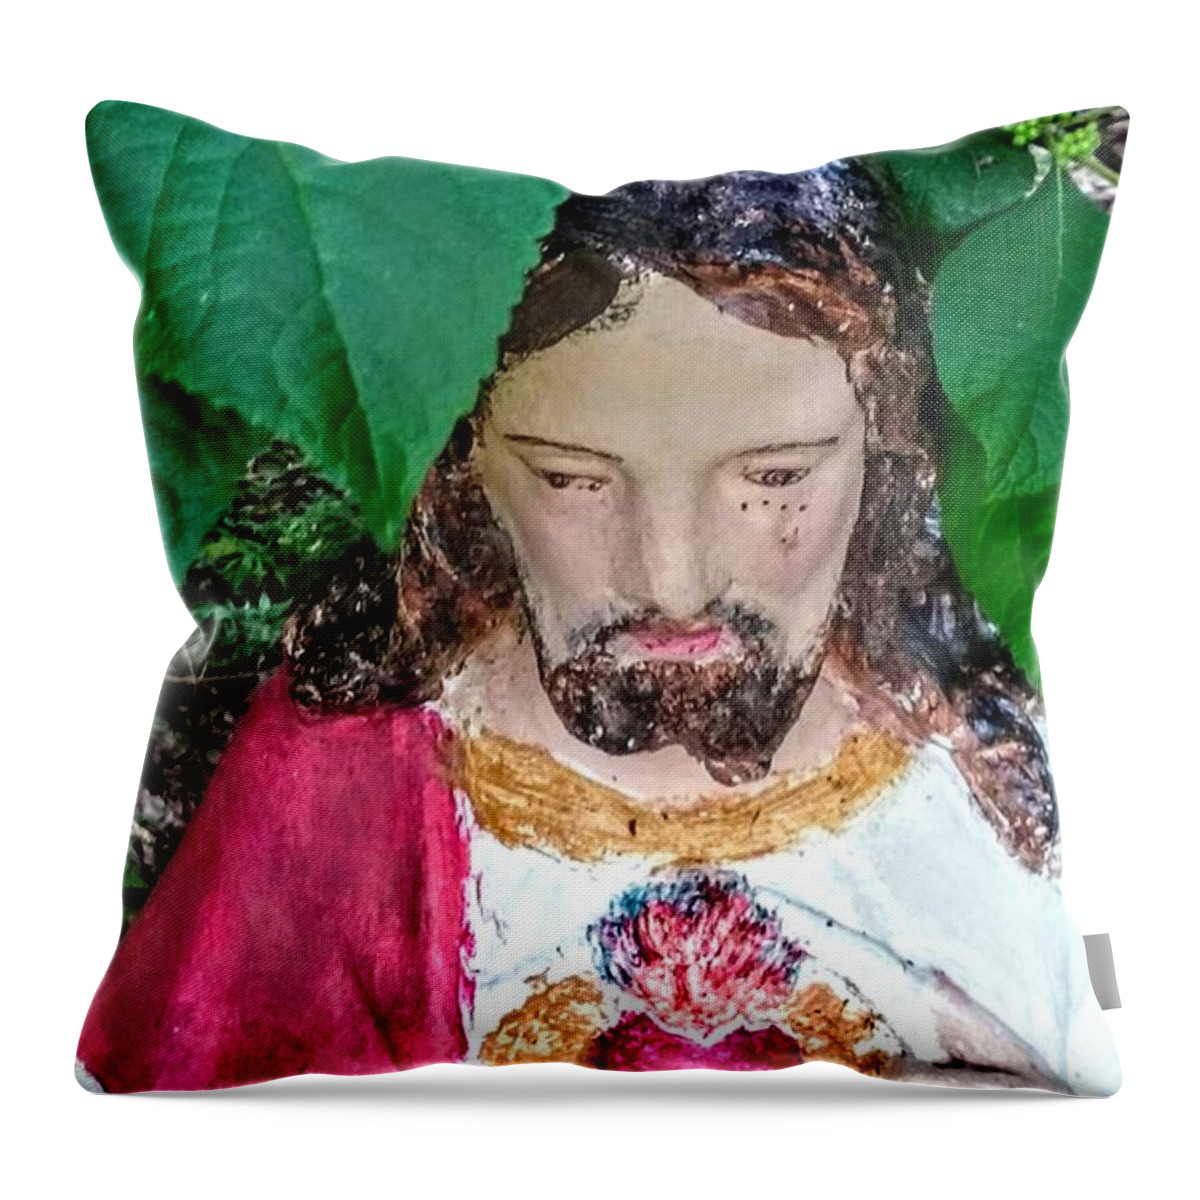 Sacred Heart Of Jesus In Garden Throw Pillow featuring the photograph Sacred Heart of Jesus In Garden by Seaux-N-Seau Soileau